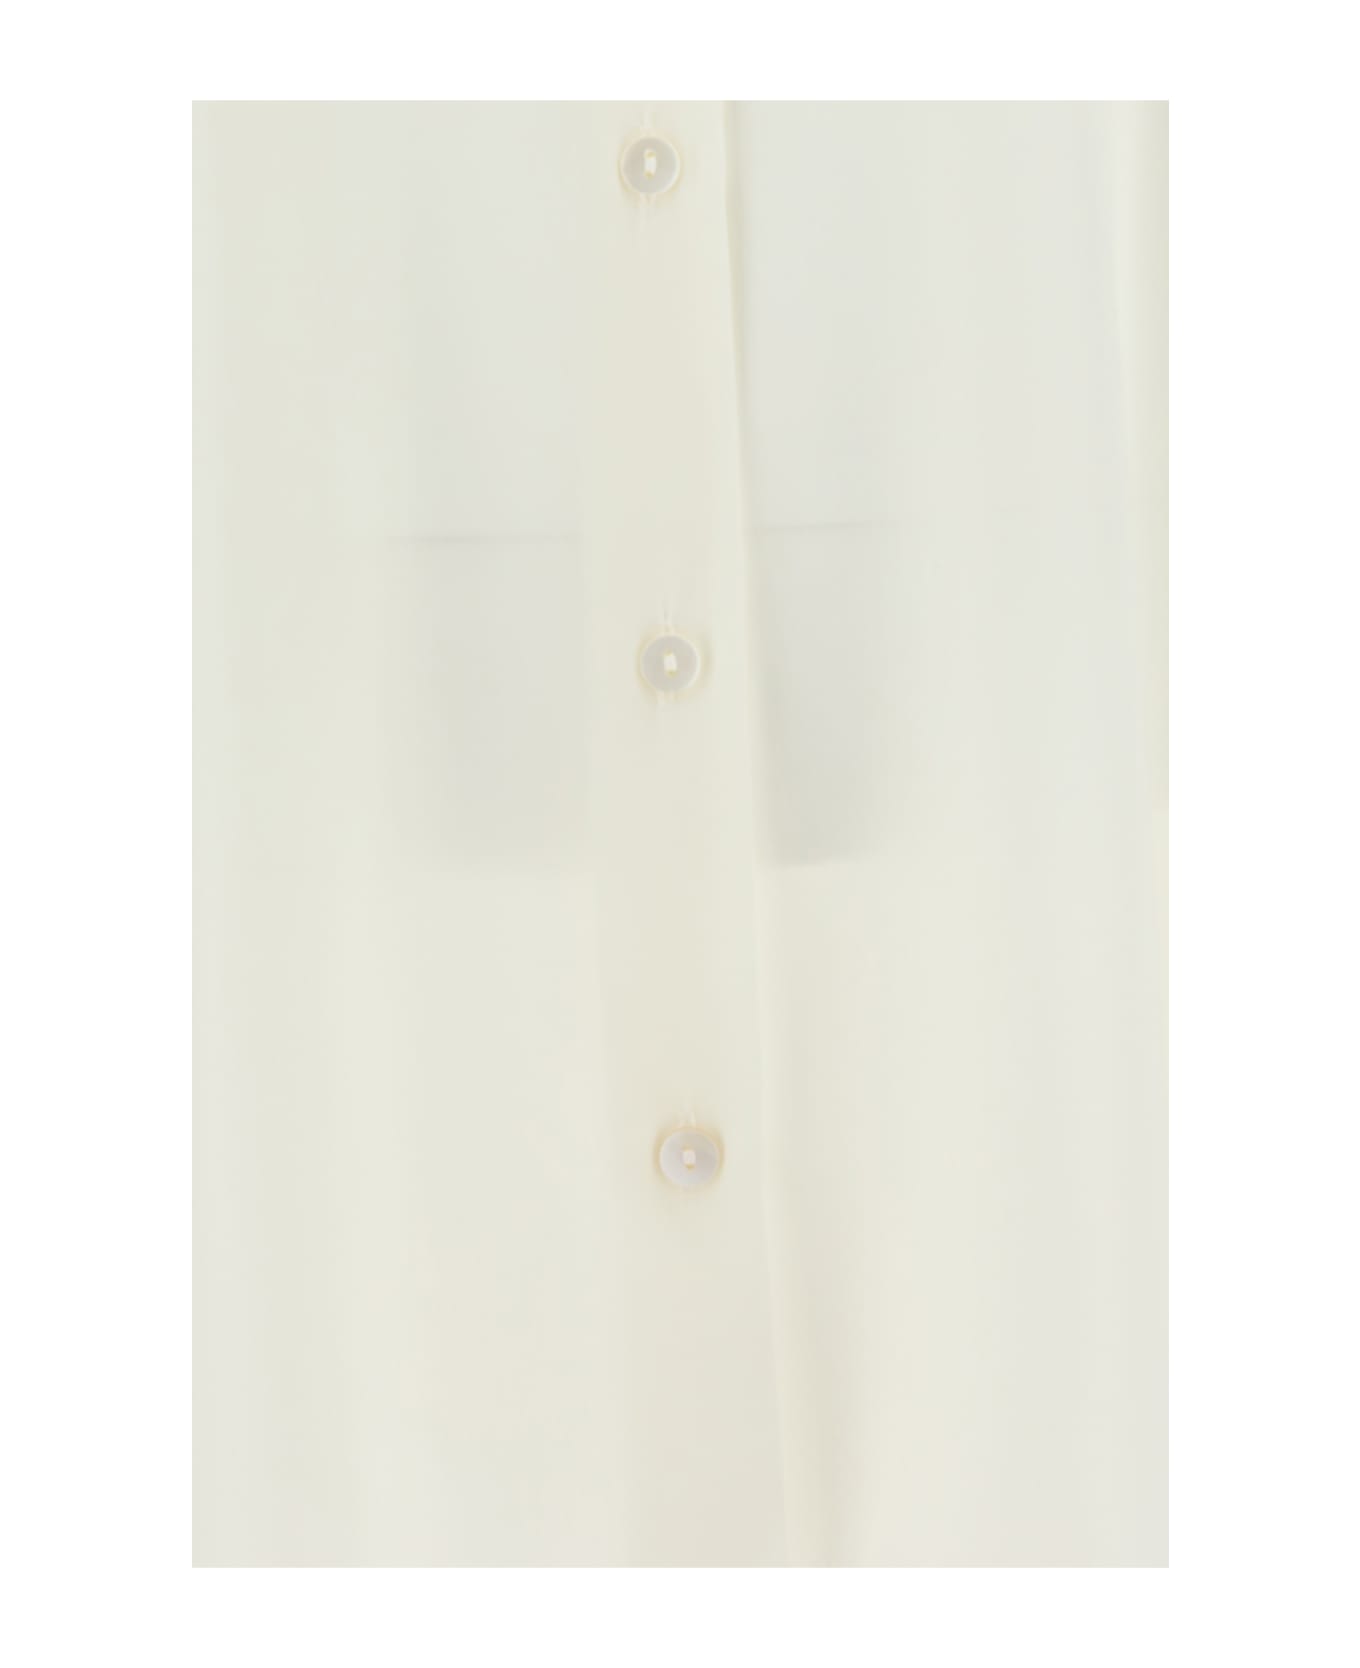 Ella Kimono Shirt - Bianco 1005